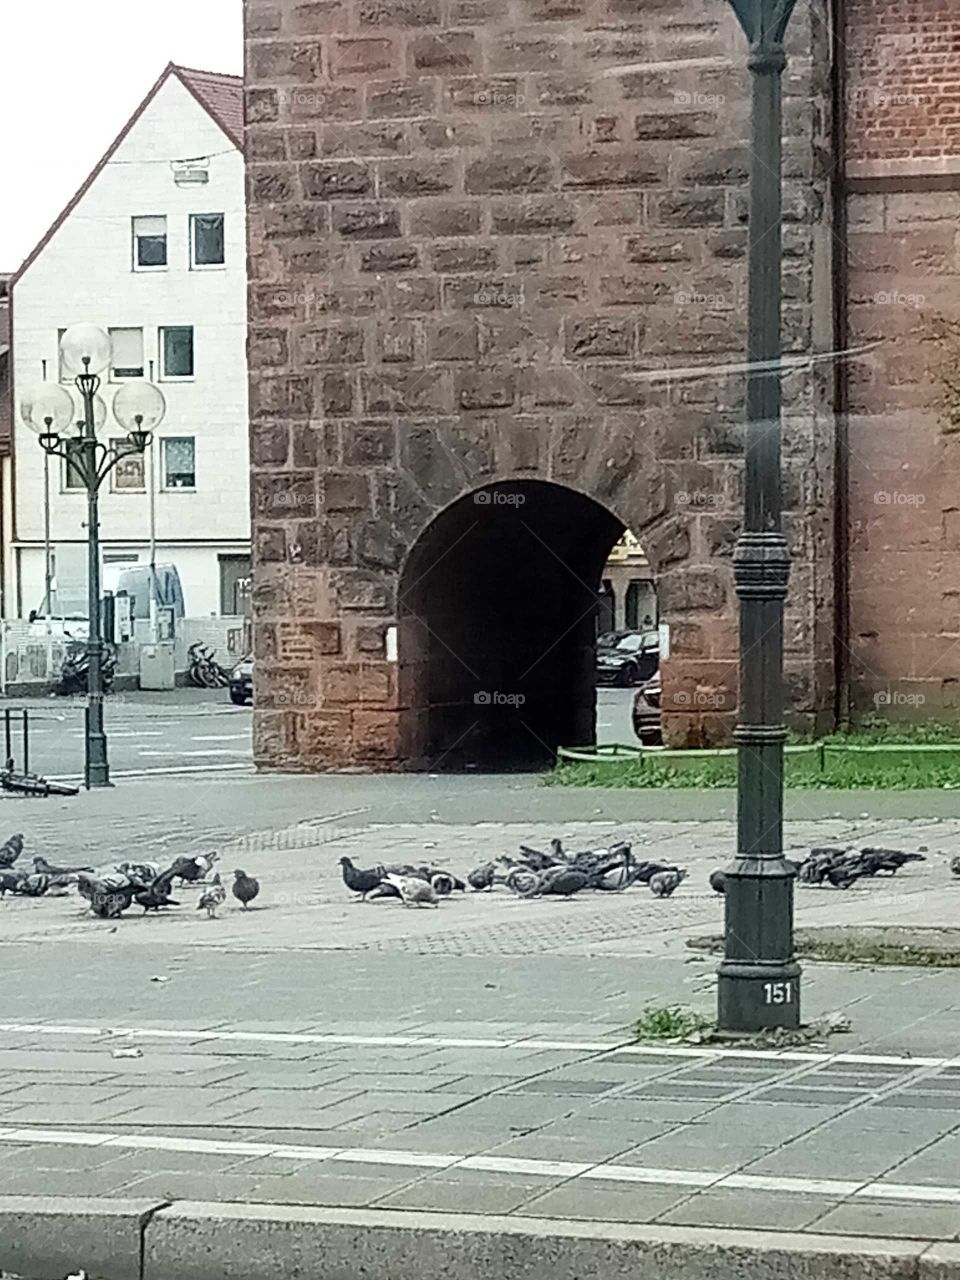 Tauben in der Stadt ,ein lästiges übel ,füttern verboten man will sie los werden und nicht vermehren